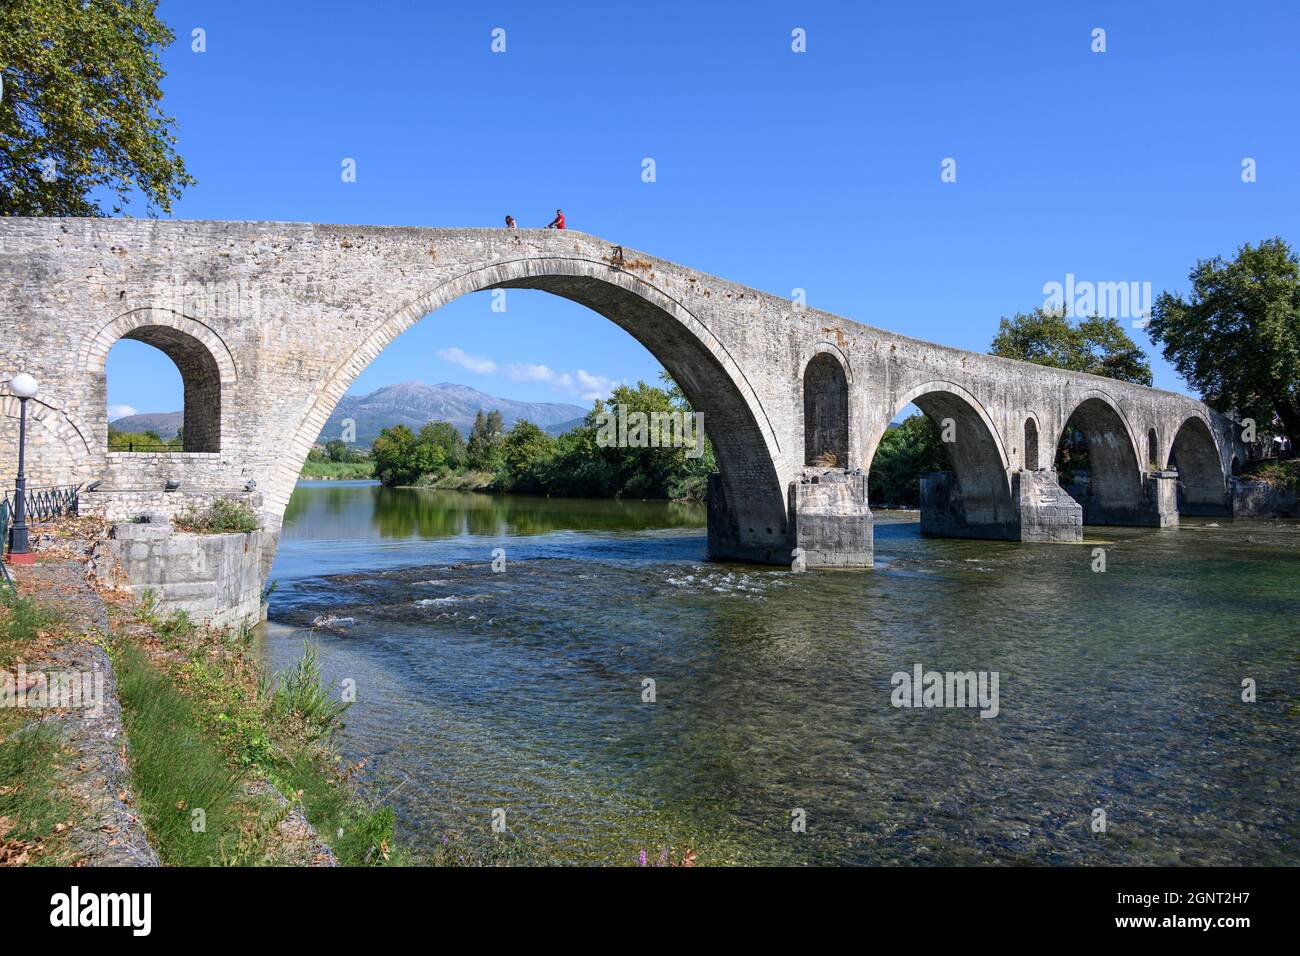 Le célèbre pont de pierre ottoman à Arta construit au début du XVIIe cen. Sur les fondations romaines et médieavales antérieures, la municipalité d'Arta, Epirus, Grèce. Banque D'Images